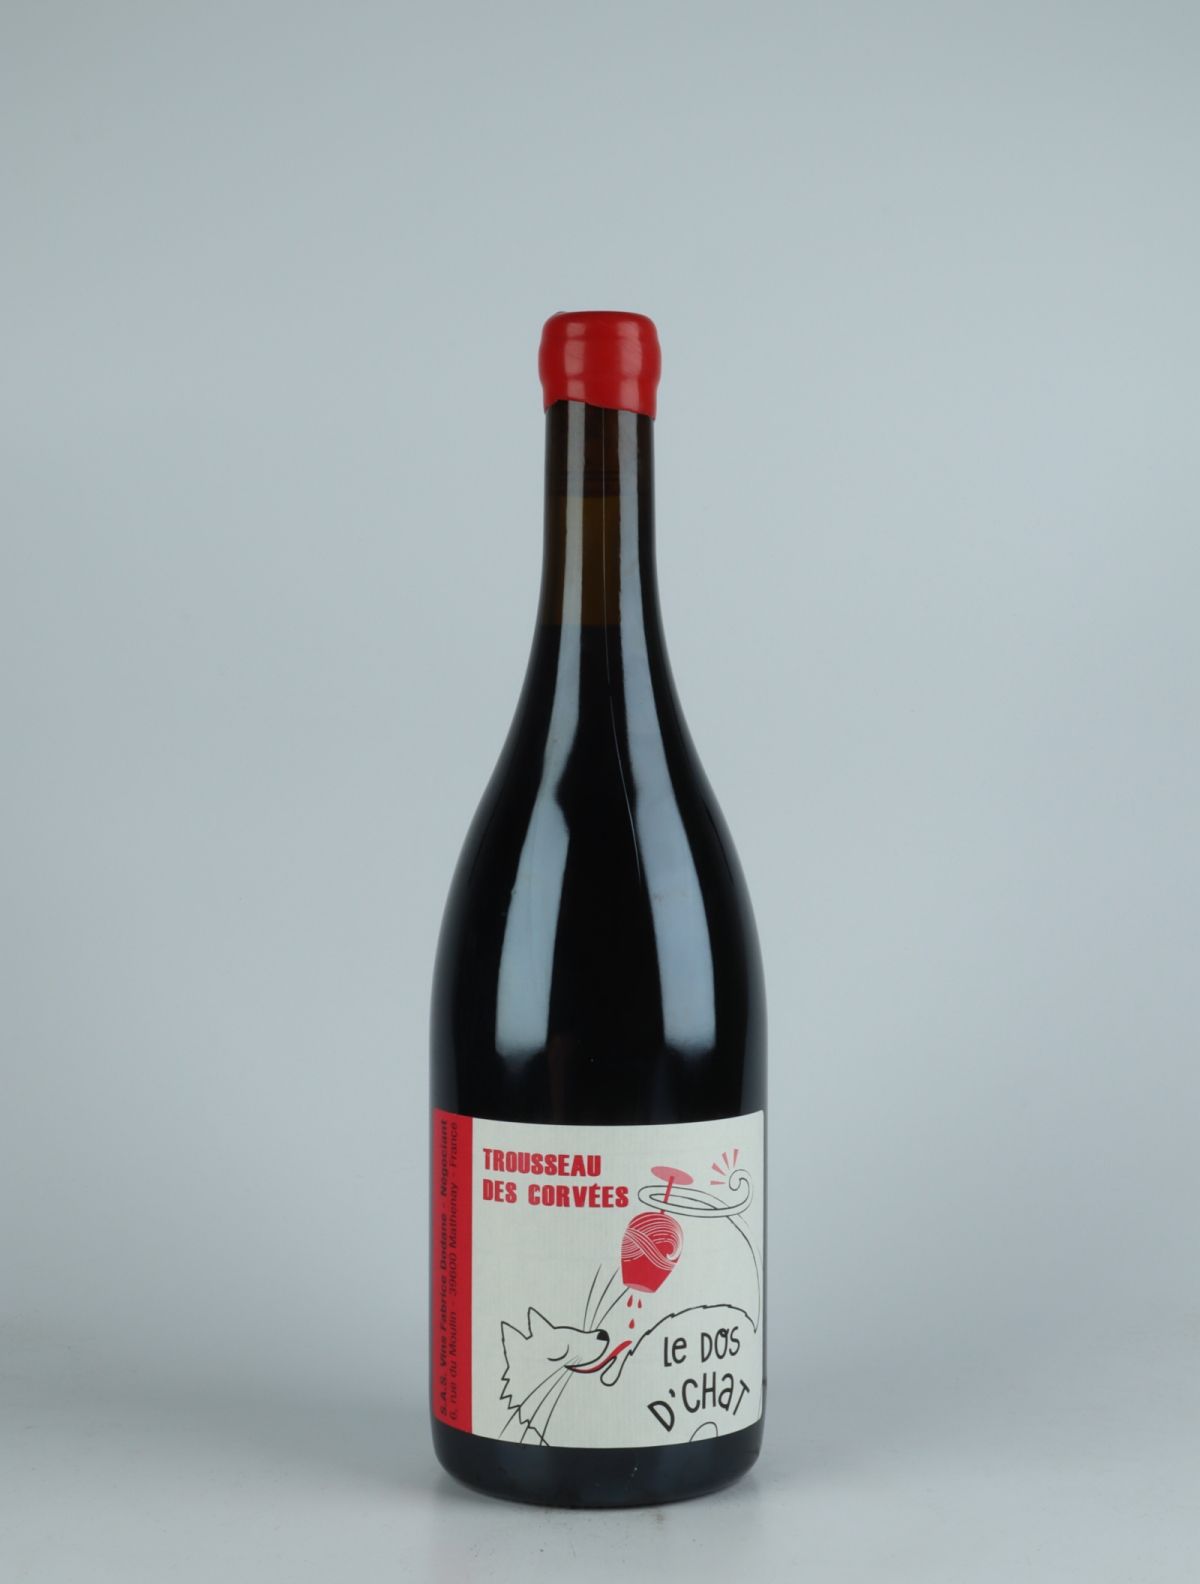 A bottle 2020 Arbois Rouge - Trousseau des Corvées Red wine from Fabrice Dodane, Jura in France